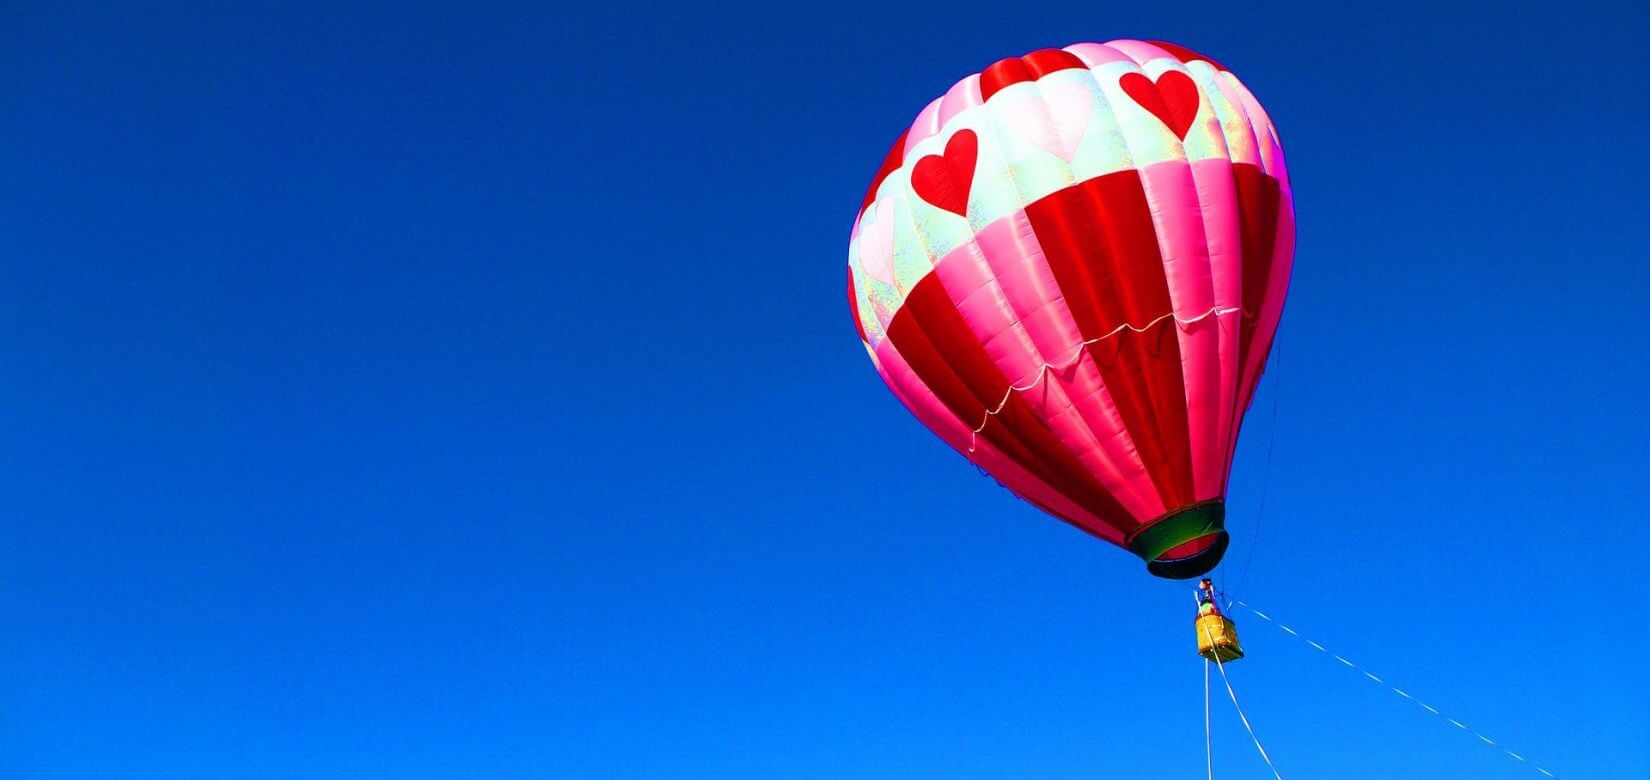 Γάμοι στα… σύννεφα με αερόστατο - Κι ένας βιολιστής να παίζει μόνο για εσάς....